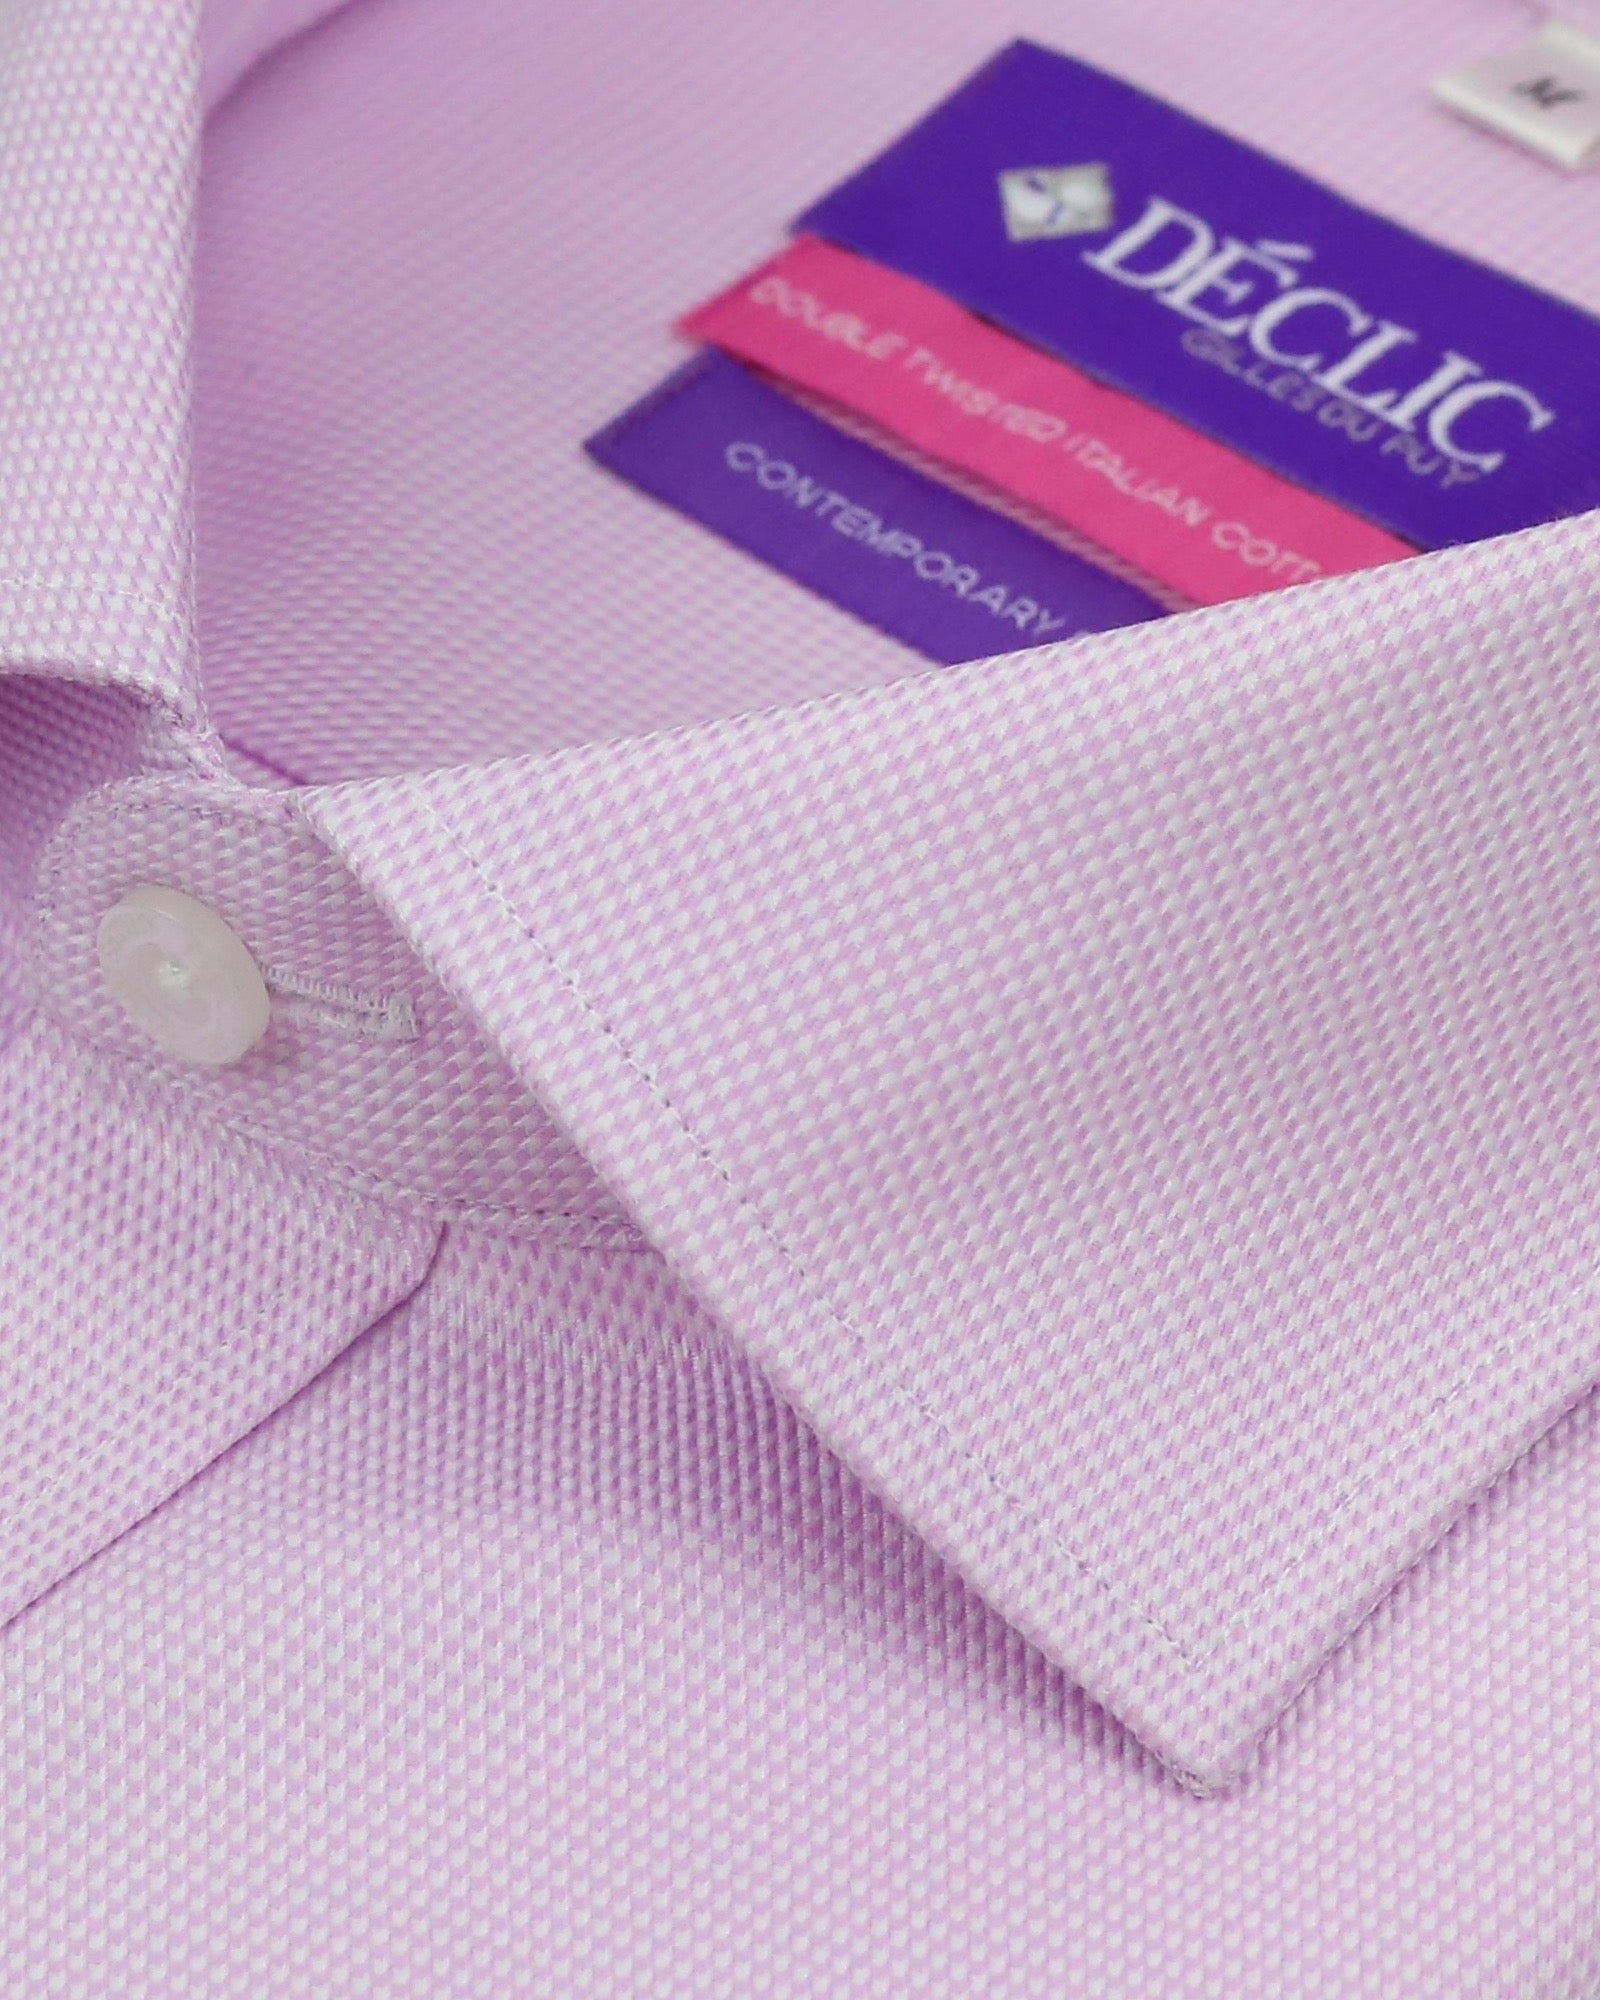 DÉCLIC Harlan Textured Shirt - Pink